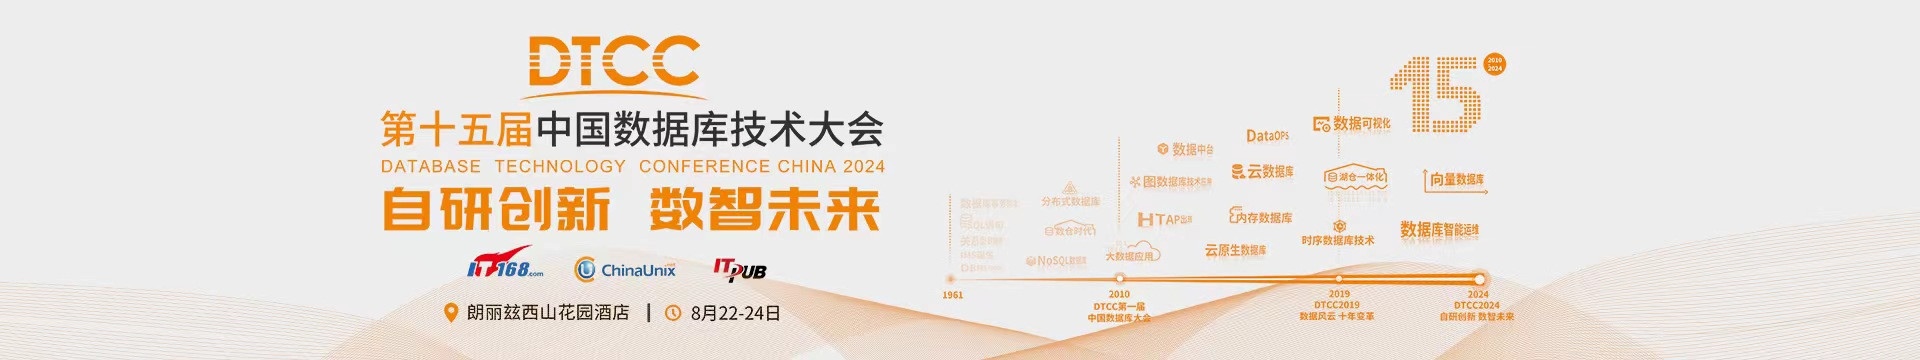 DTCC2024第十五届中国数据库技术大会